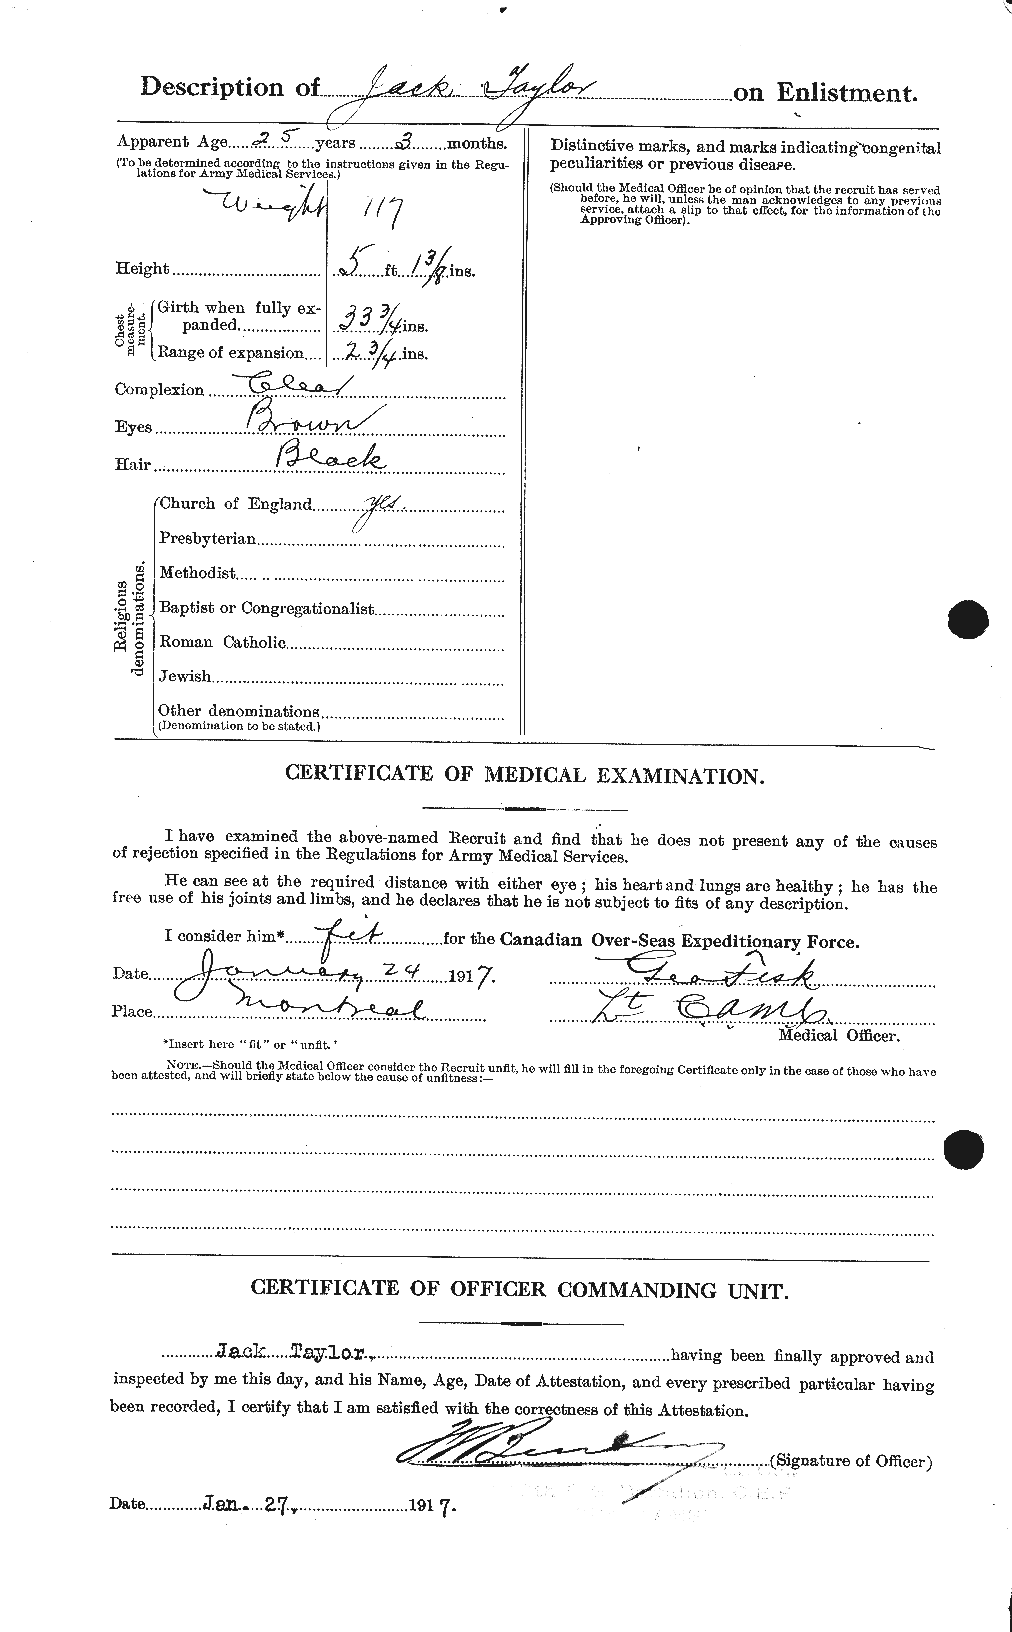 Dossiers du Personnel de la Première Guerre mondiale - CEC 627050b